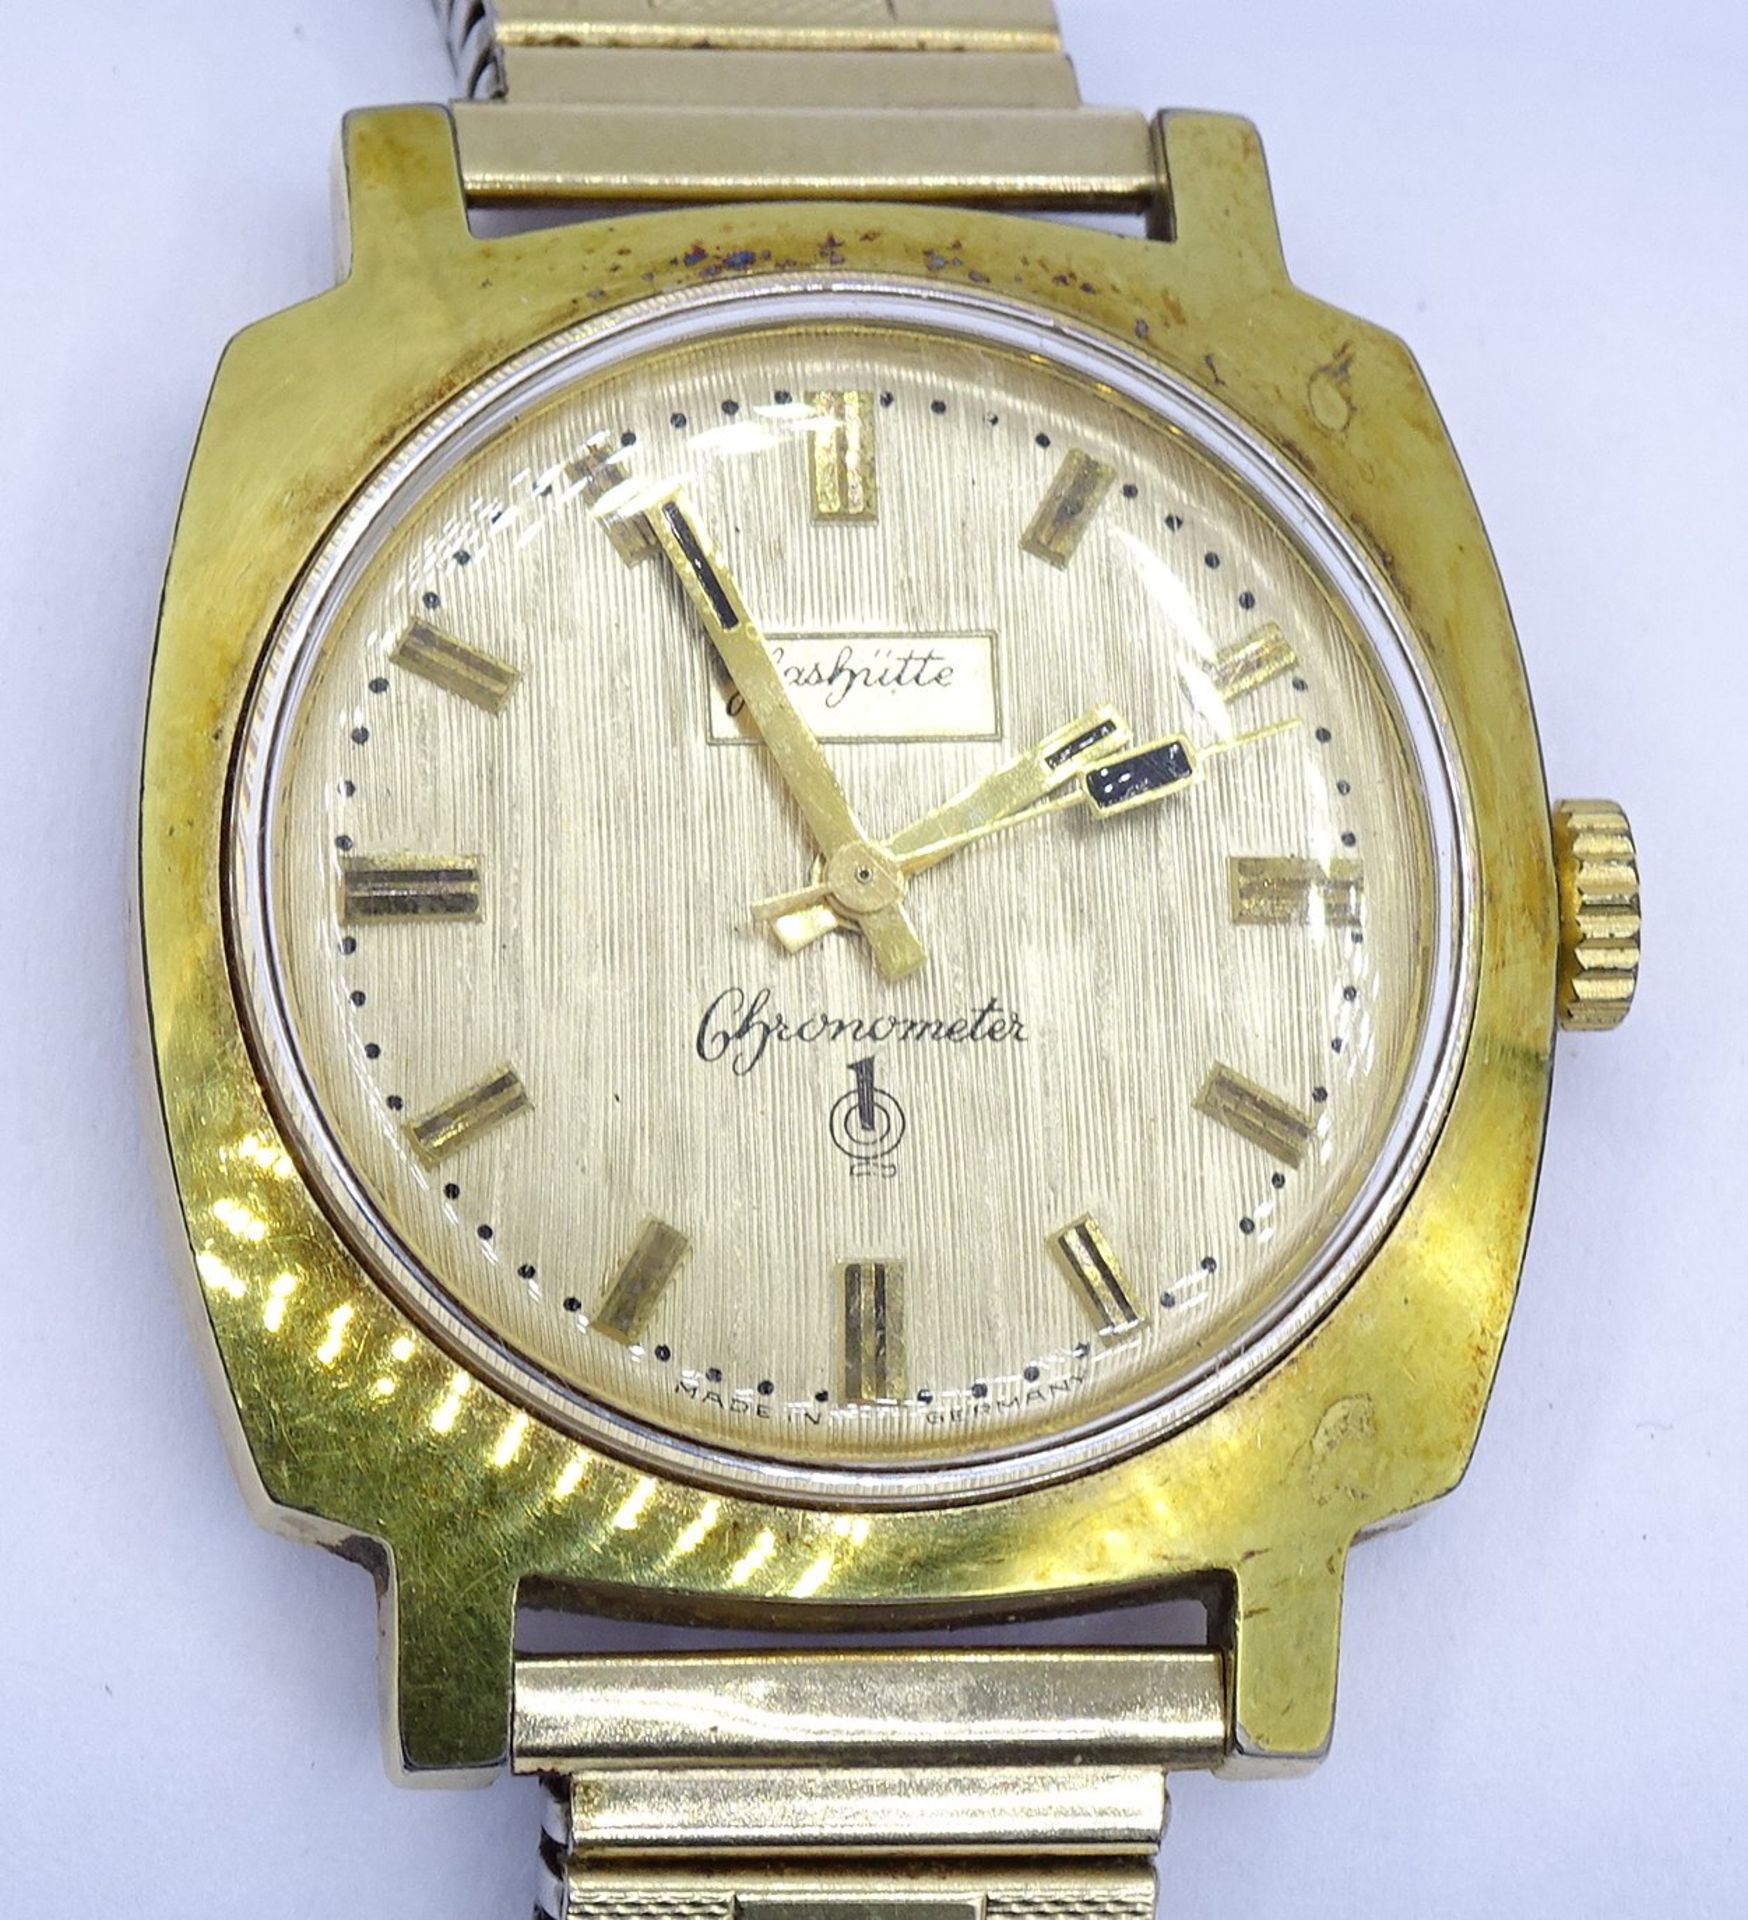 Herren Armbanduhr "Glashütte", Q1, Chronometer,Cal. 70.3 mechanisch, Werk läuft, Gehäuse 35 x 35mm, - Image 3 of 5